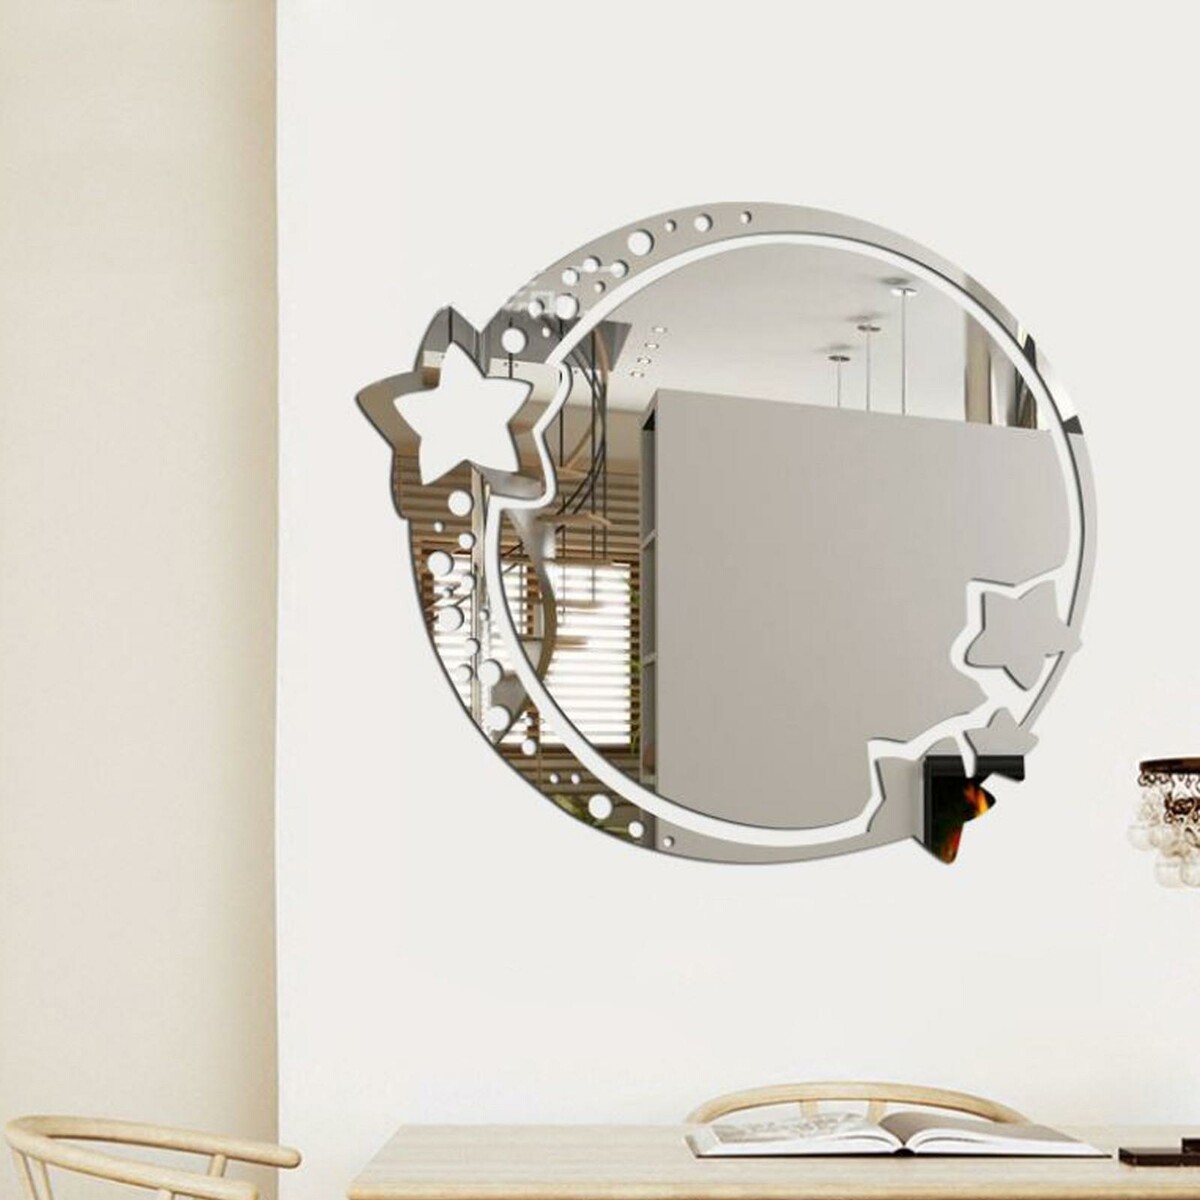 Зеркало настенное, наклейки интерьерные, зеркальные, декор на стену, панно 22 х 19 см зеркало